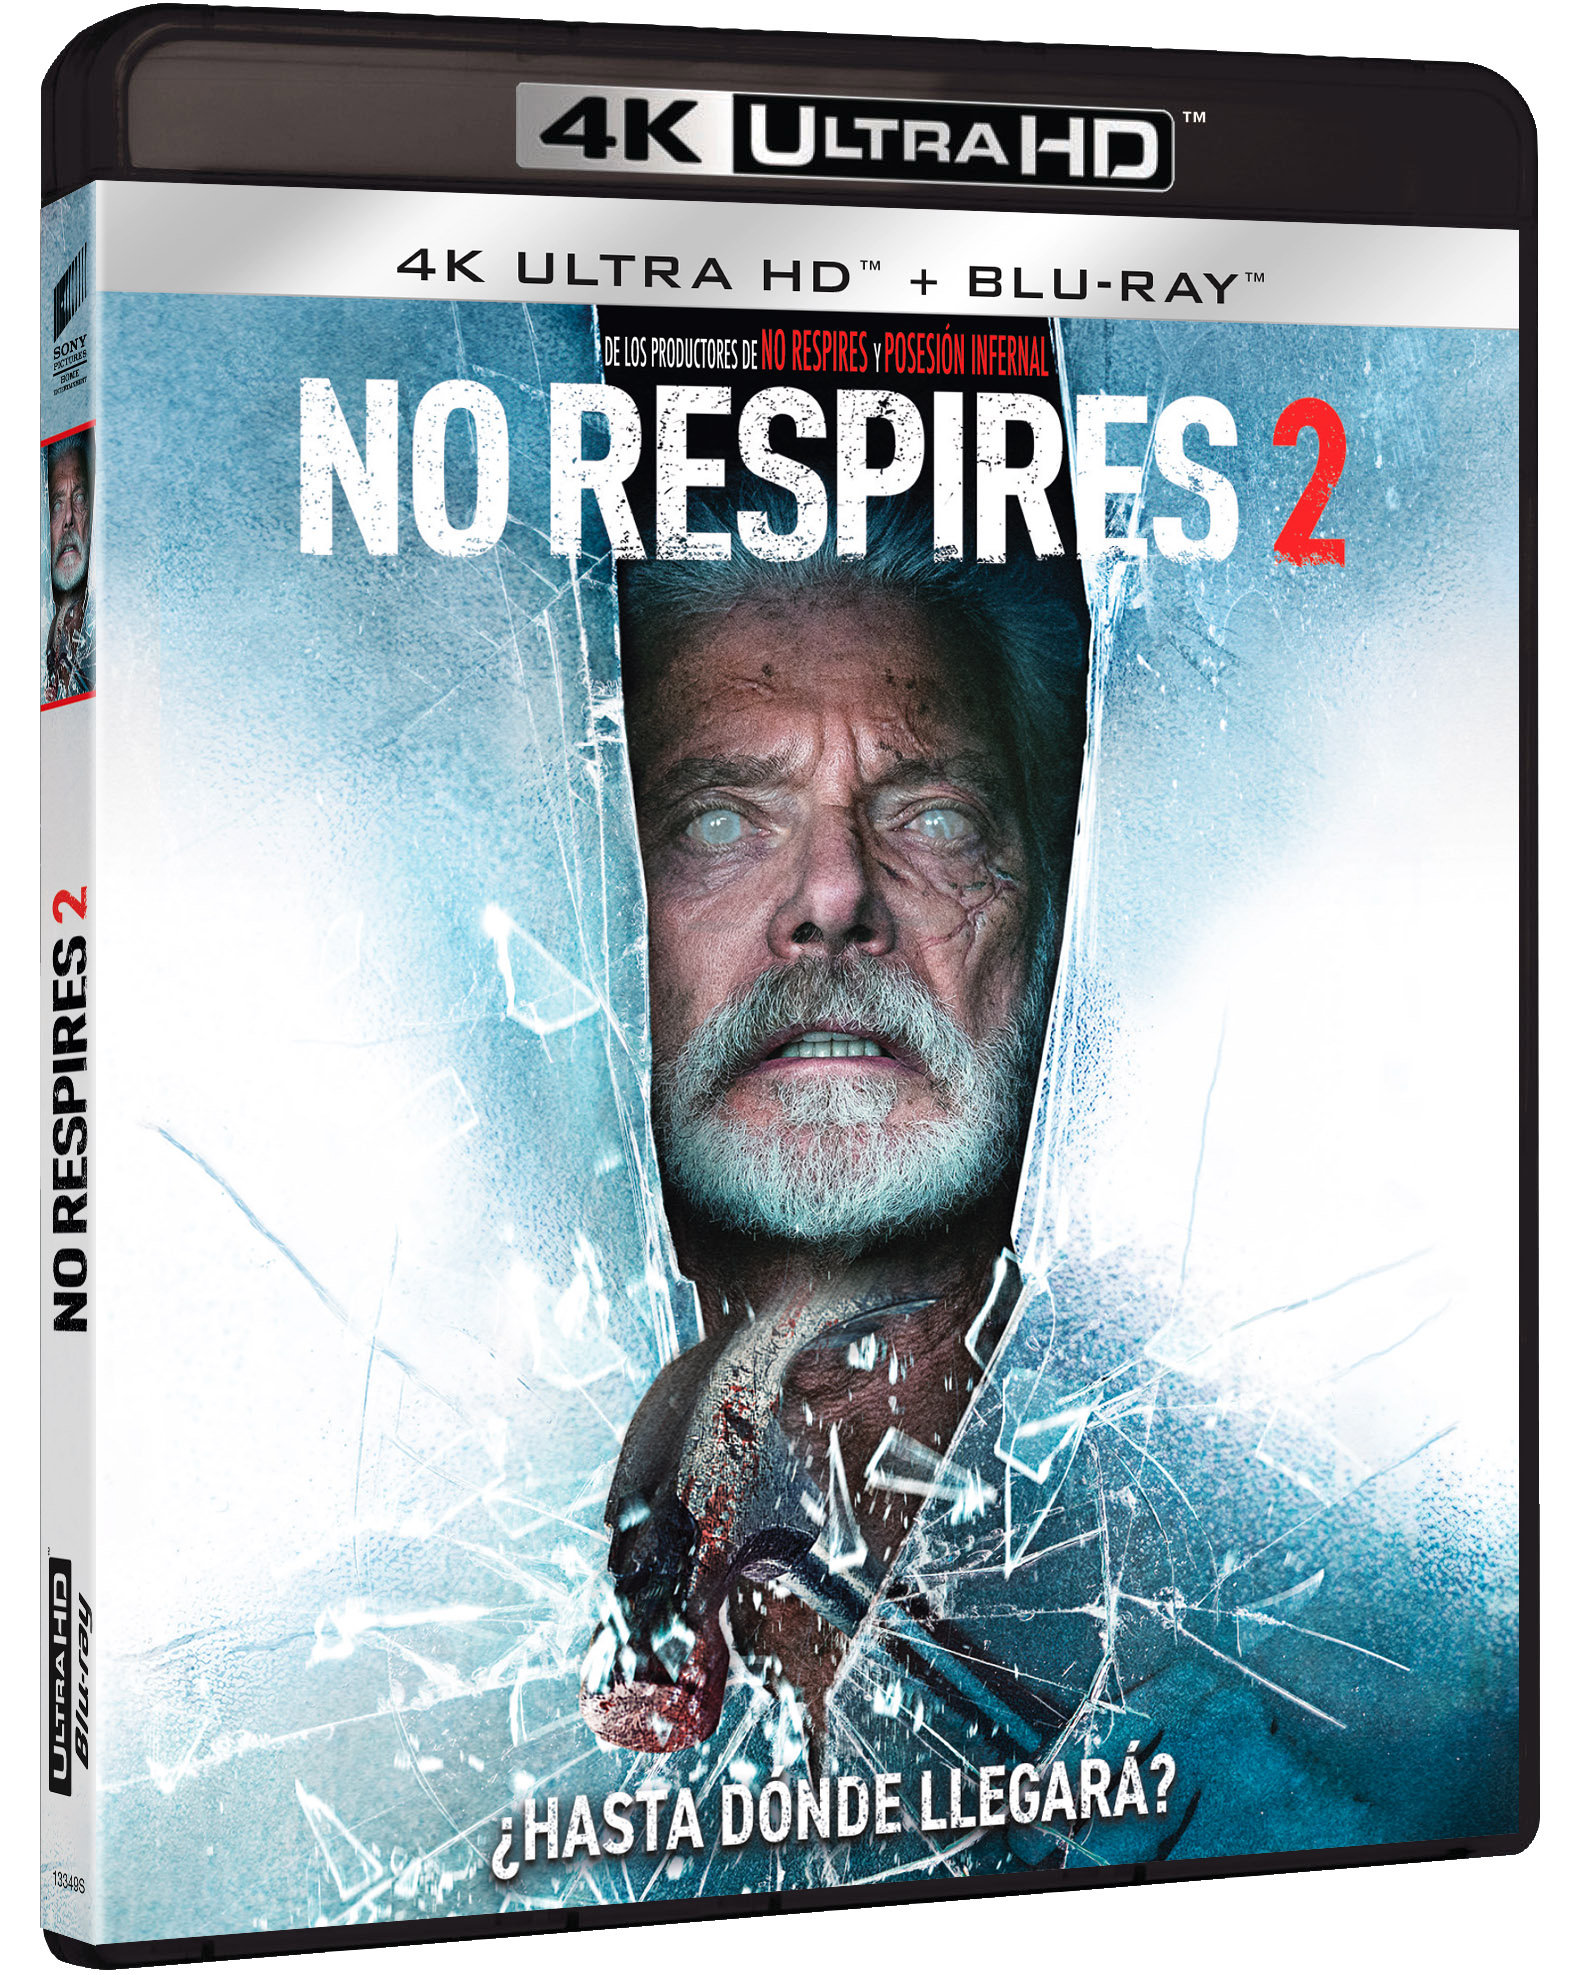 'No respires 2', ya en DVD, Blu-ray y 4K UHD  con un final extendido